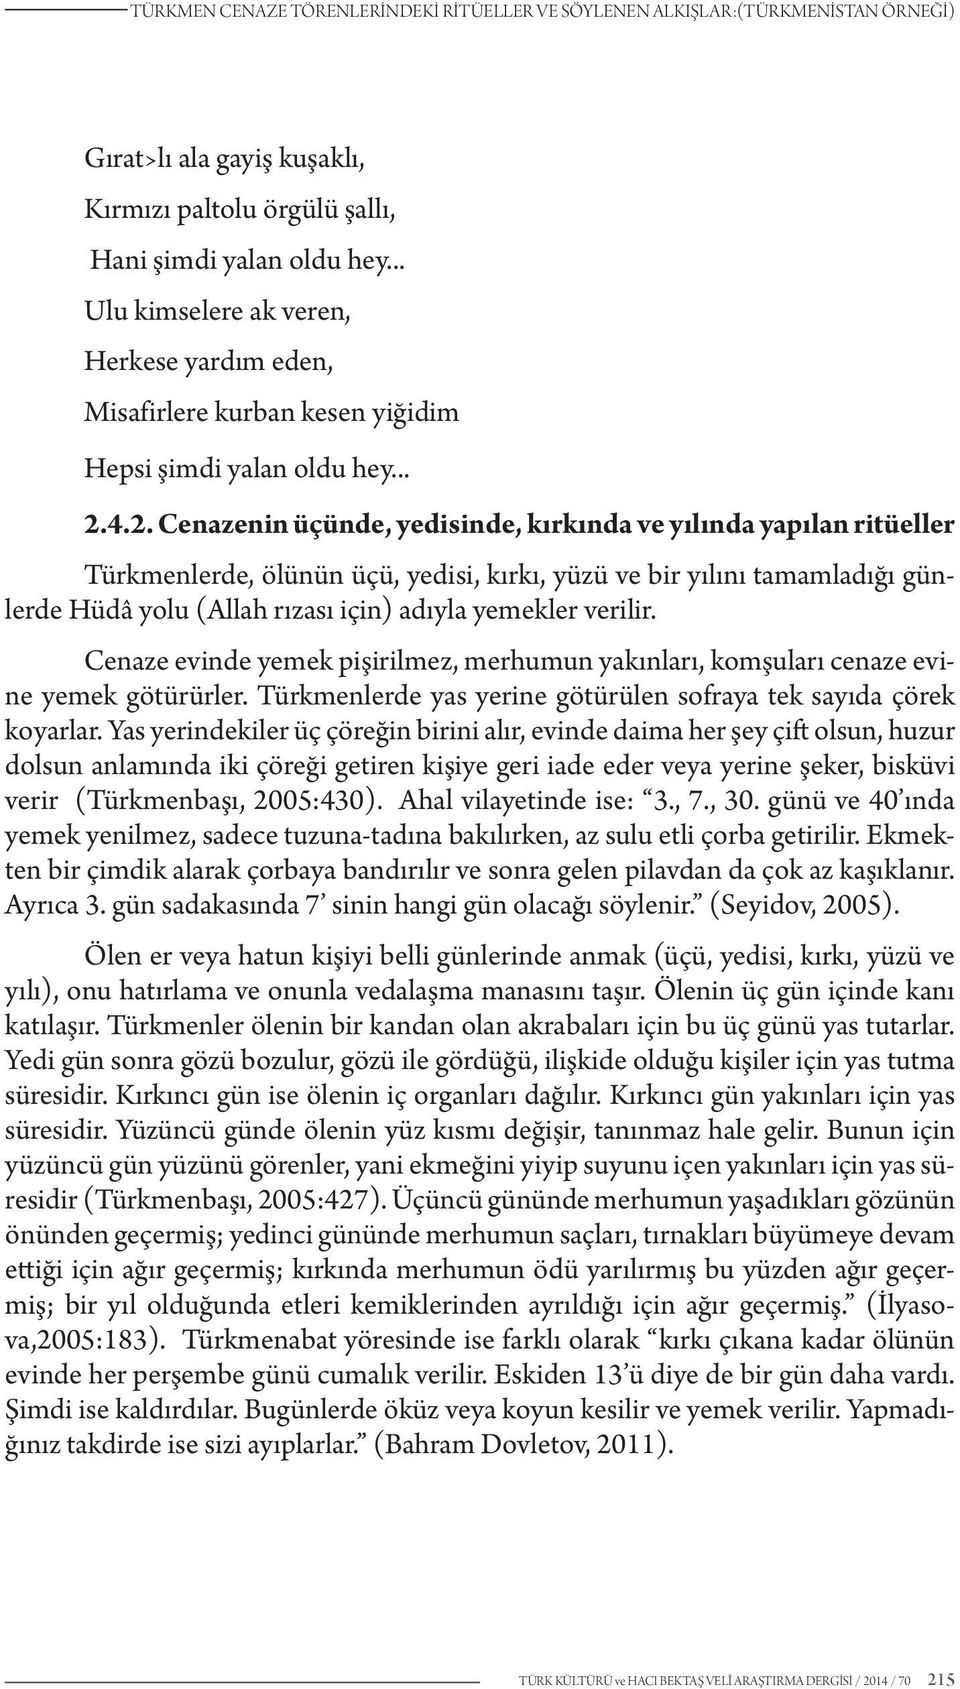 turkmen cenaze torenlerindeki ritueller ve soylenen alkislar turkmenistan ornegi pdf ucretsiz indirin